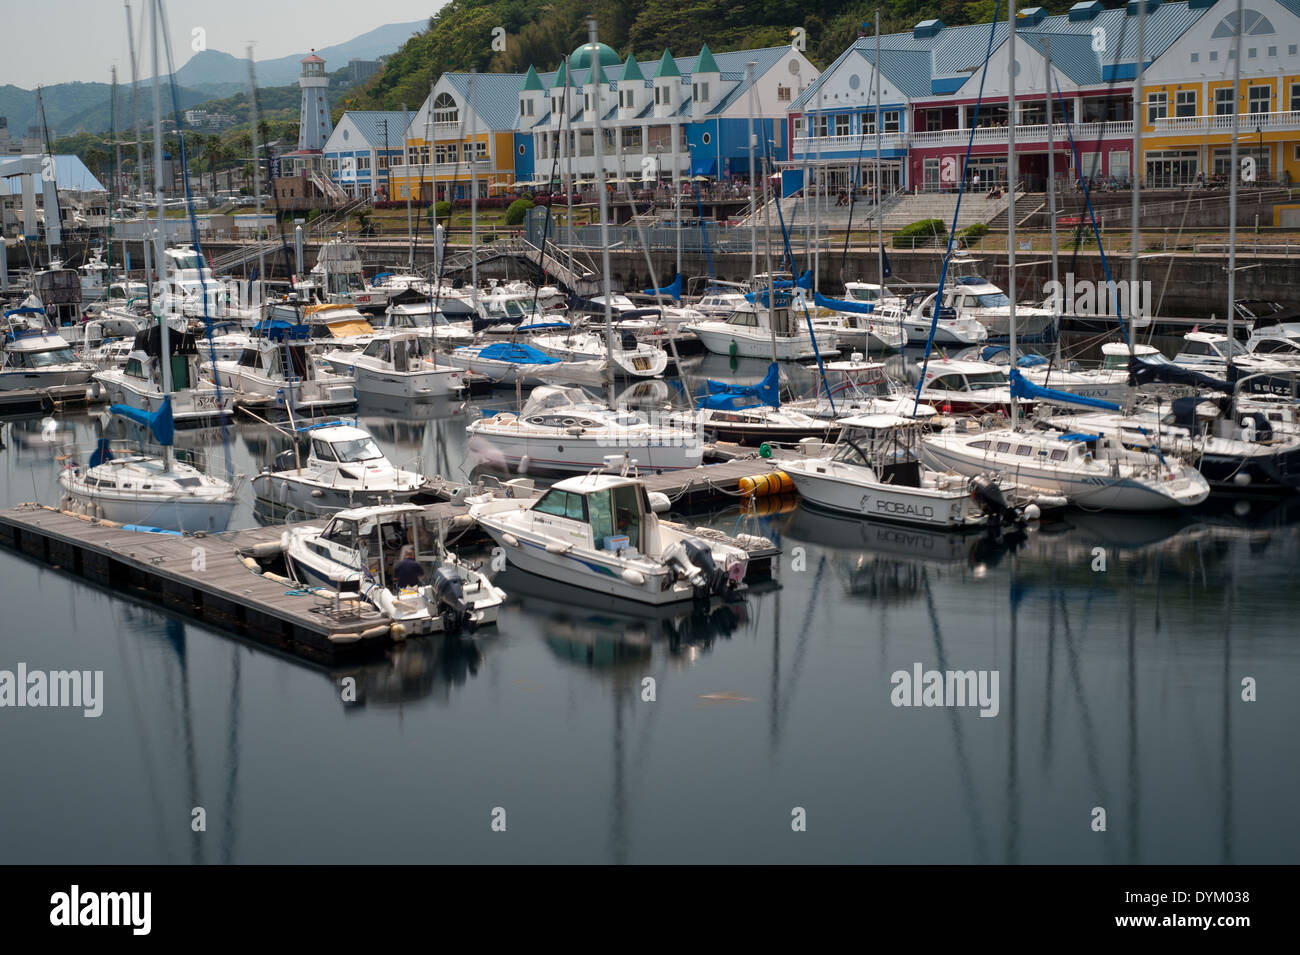 Boats at Atami harbor, Shizuoka Prefecture, Japan Stock Photo